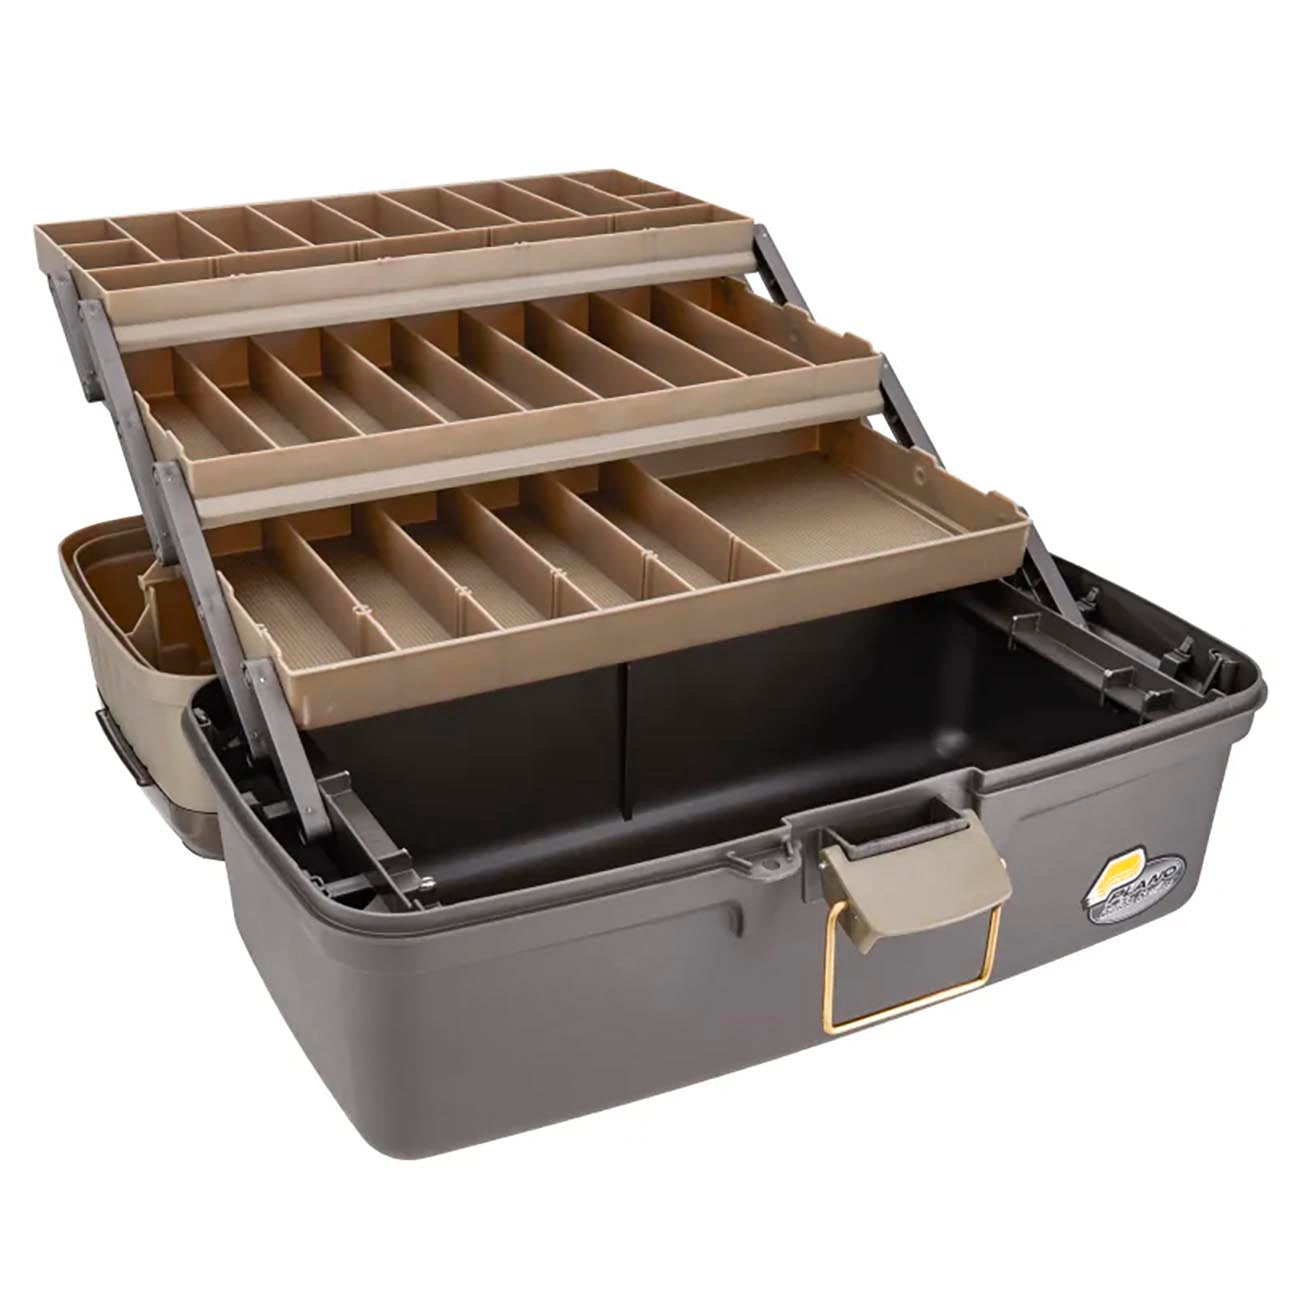 Plano Guide Series Three-tray Tackle Box - Graphite & Sandstone